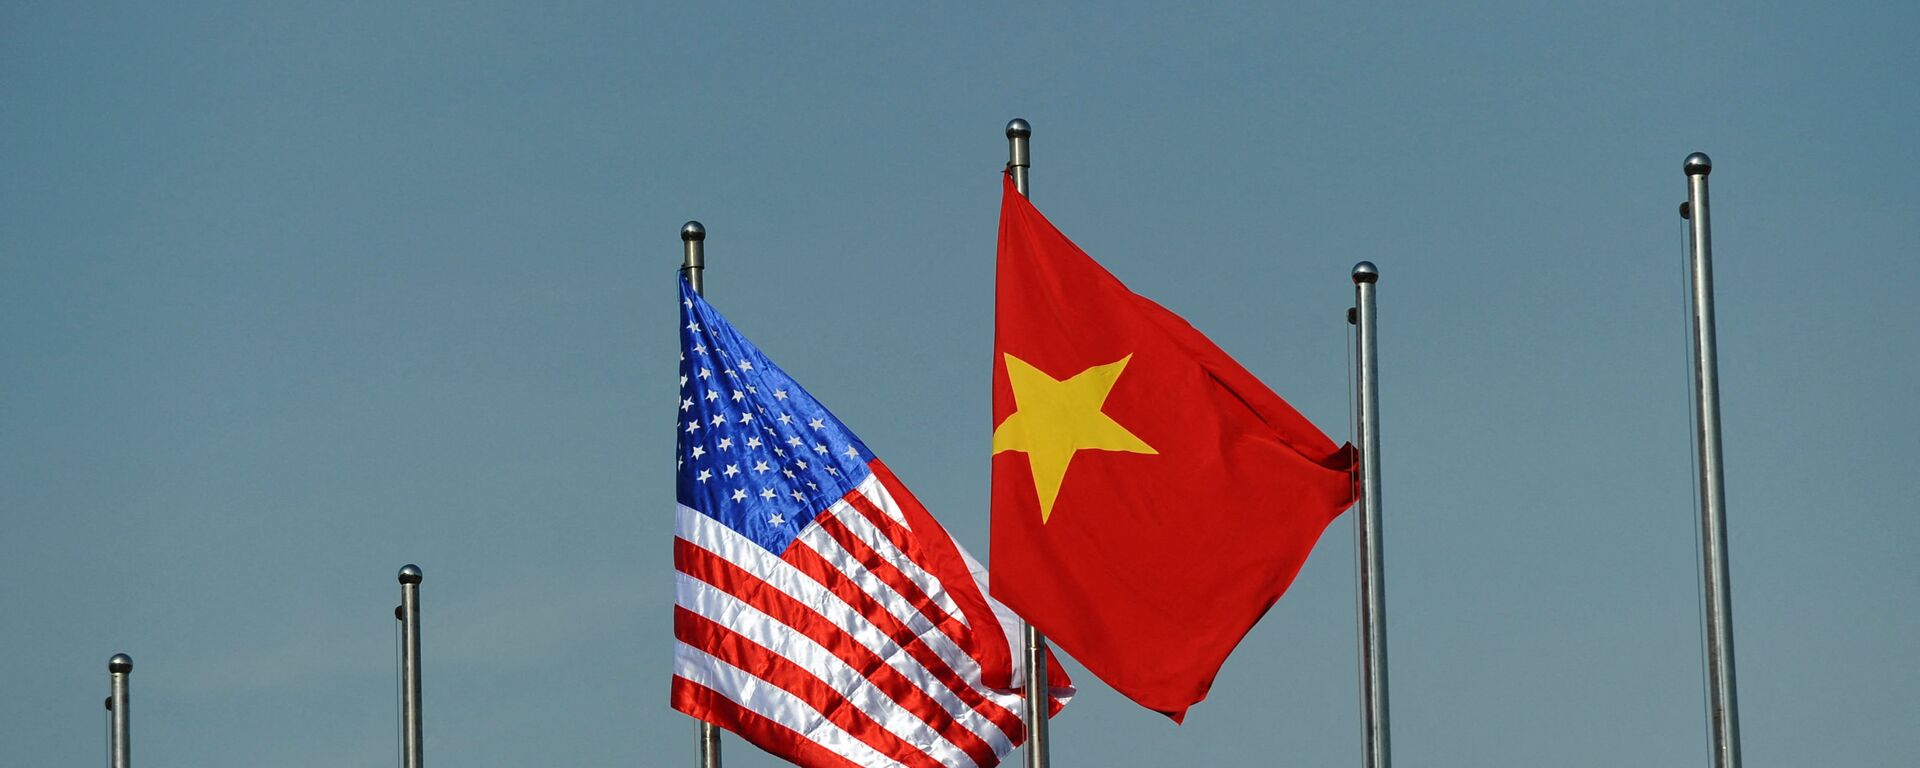 Quốc kỳ của Hoa Kỳ và Việt Nam. - Sputnik Việt Nam, 1920, 05.08.2021